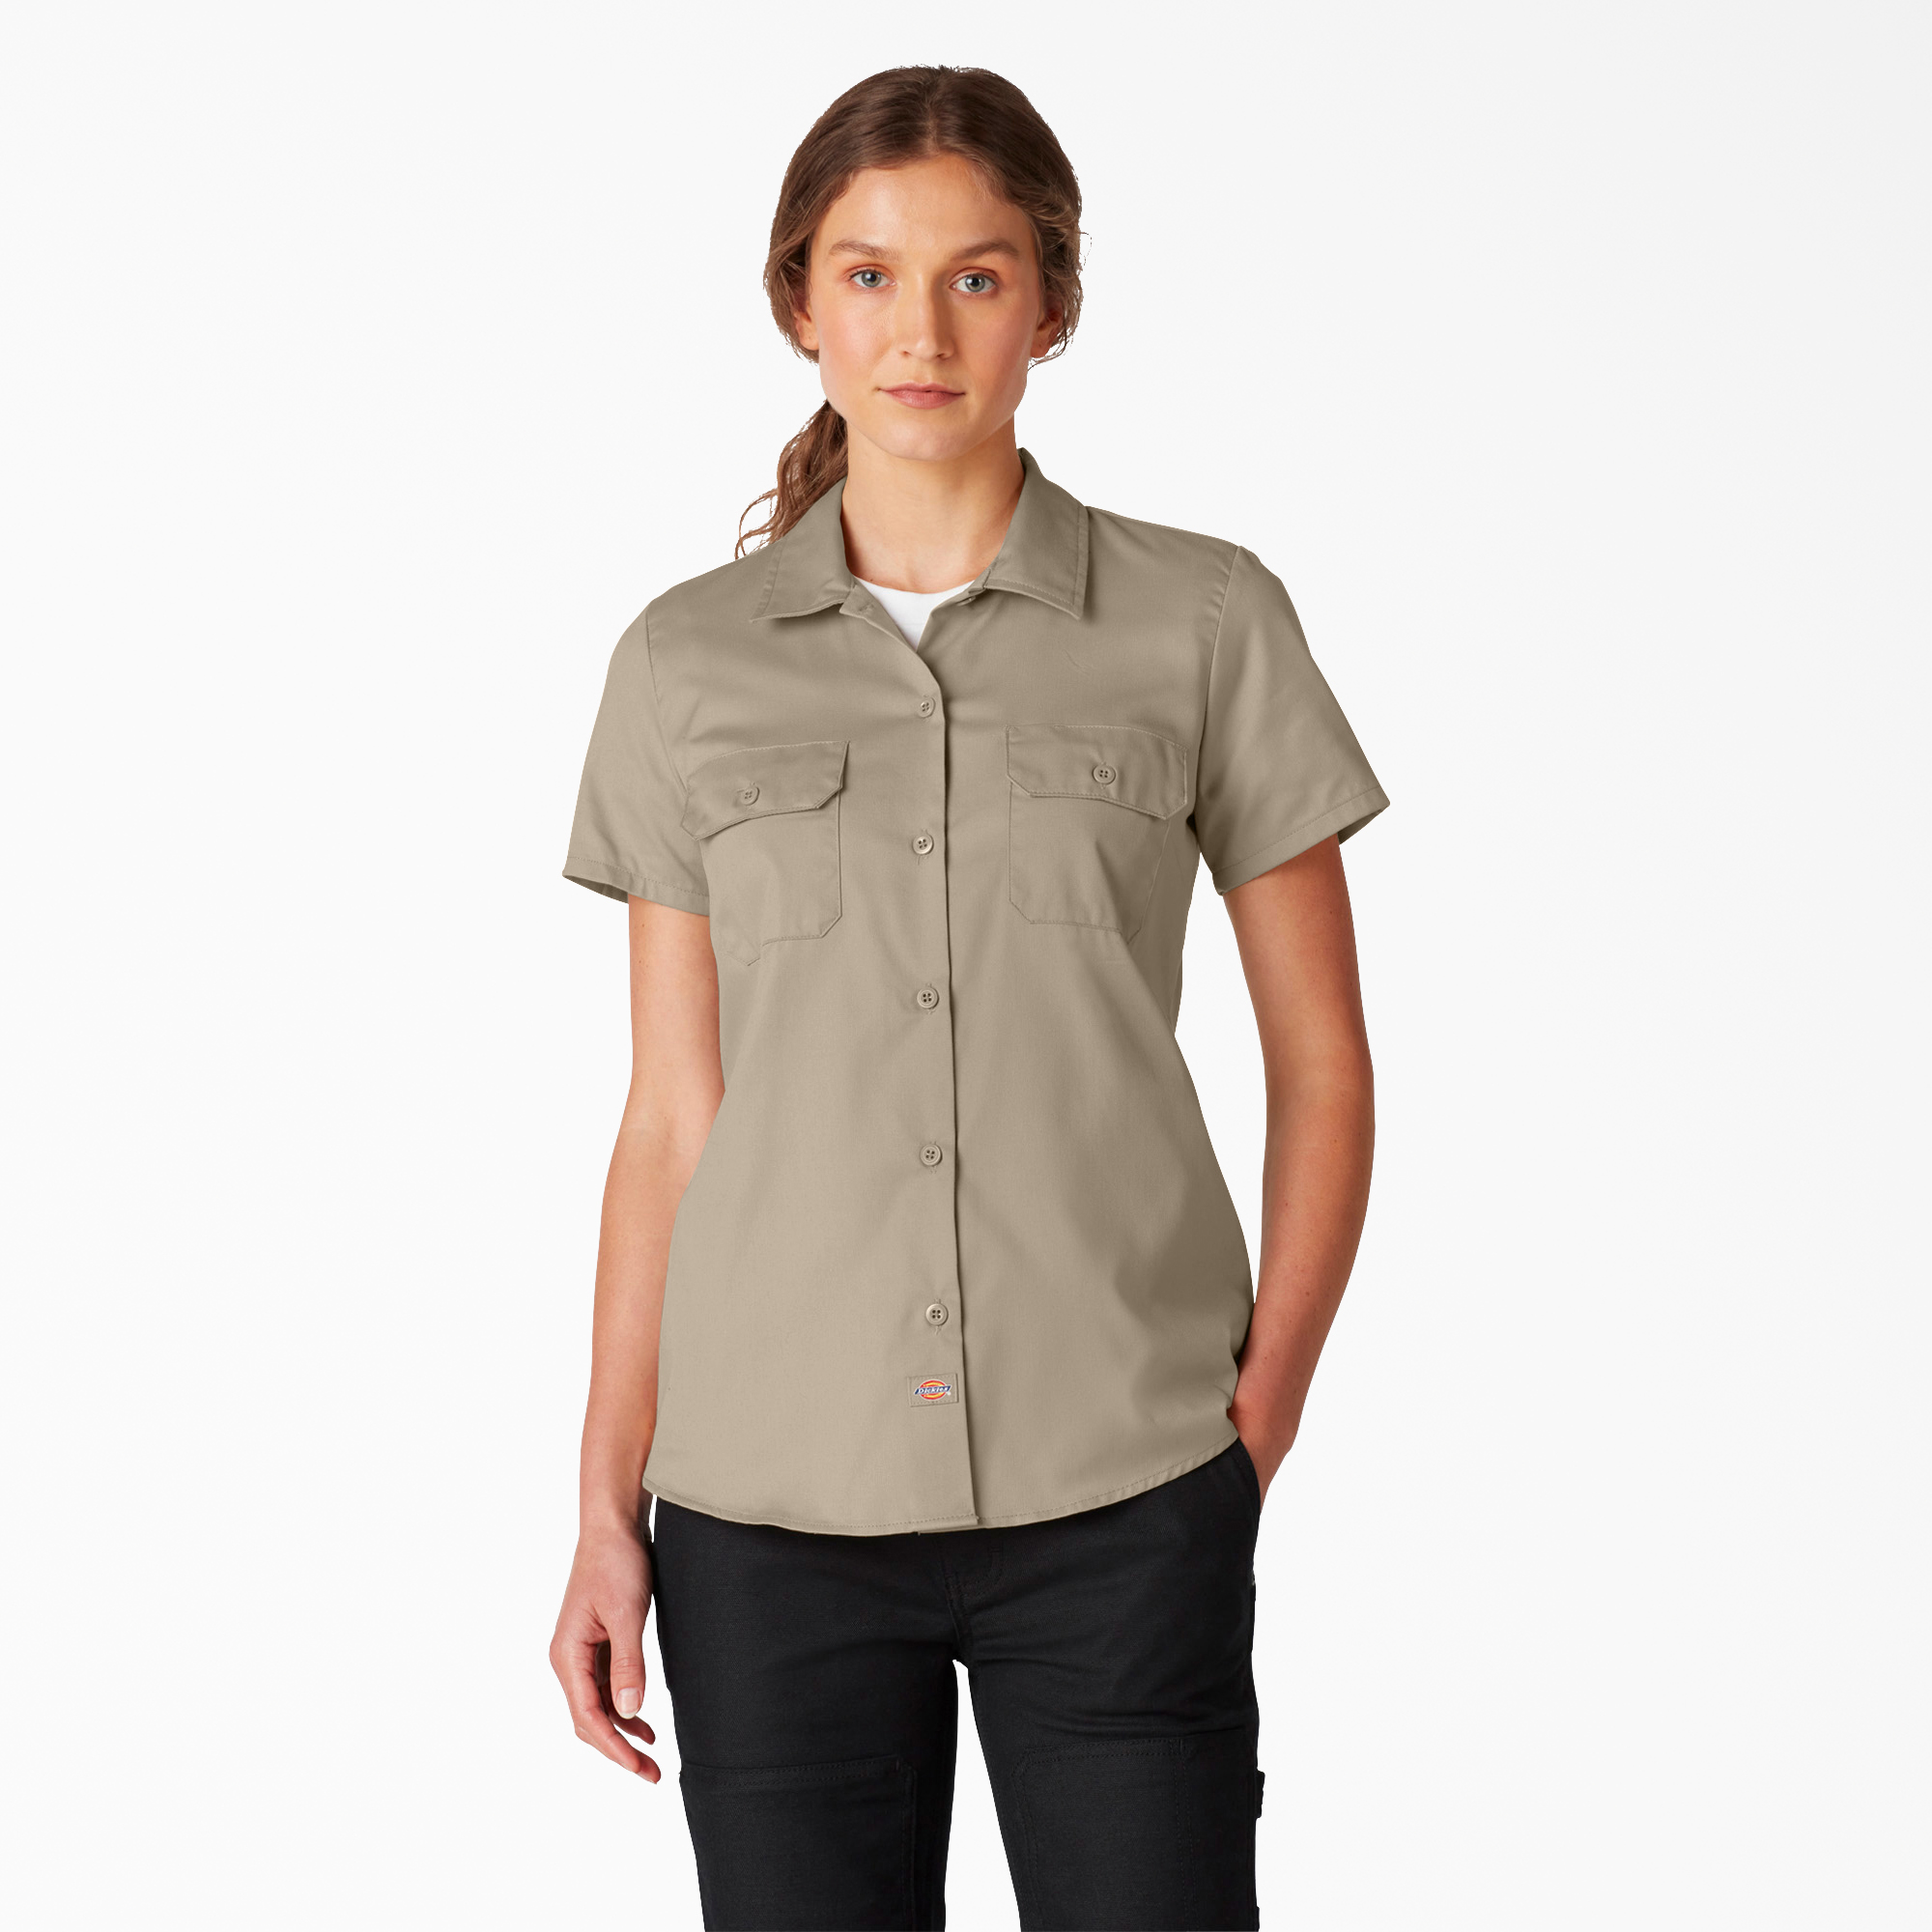 Women’s FLEX Short Sleeve Work Shirt - Desert Khaki (DS)